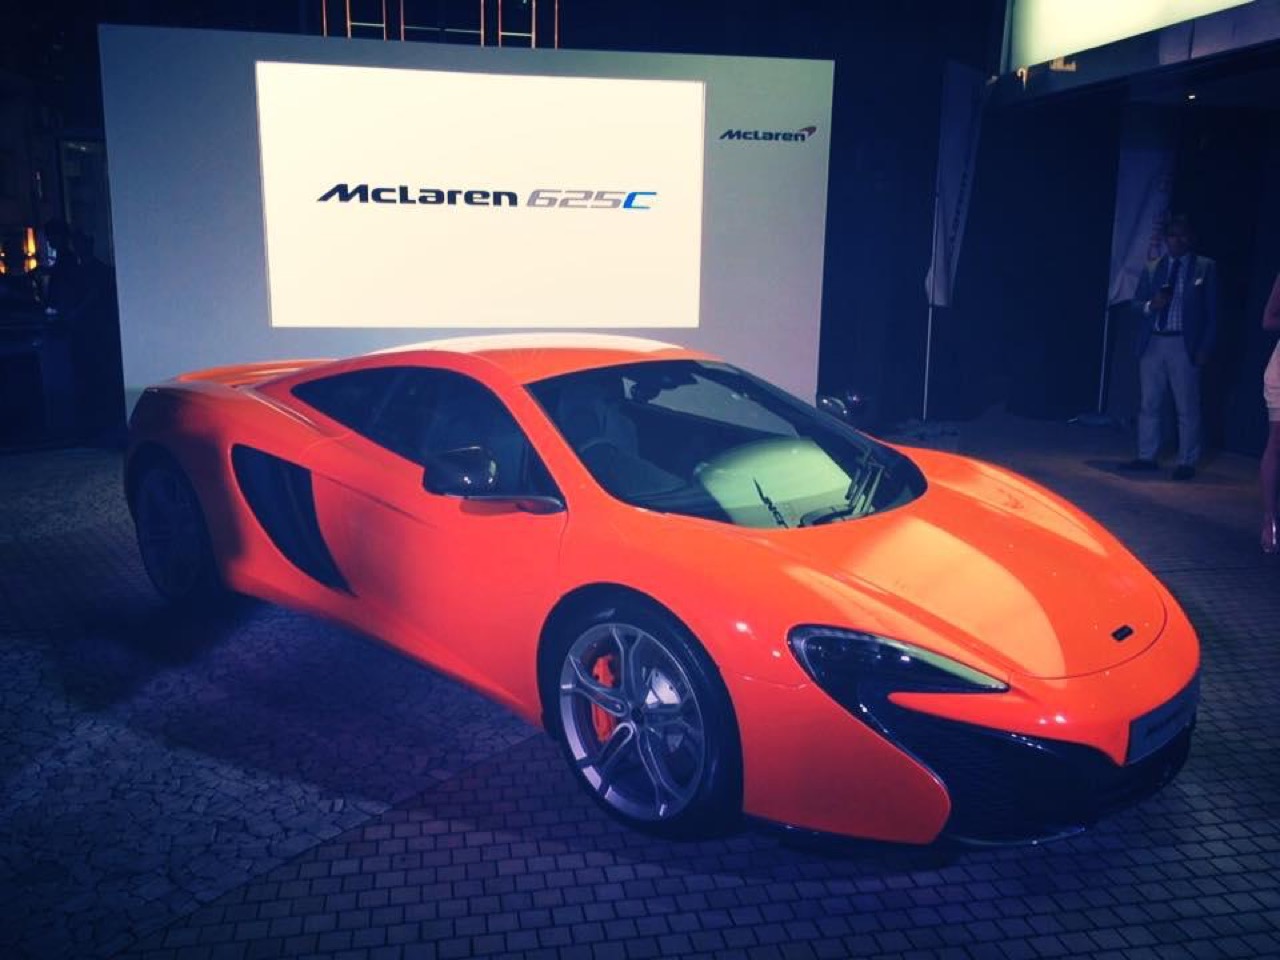 McLaren 625C - Salone di Guangzhou 2014